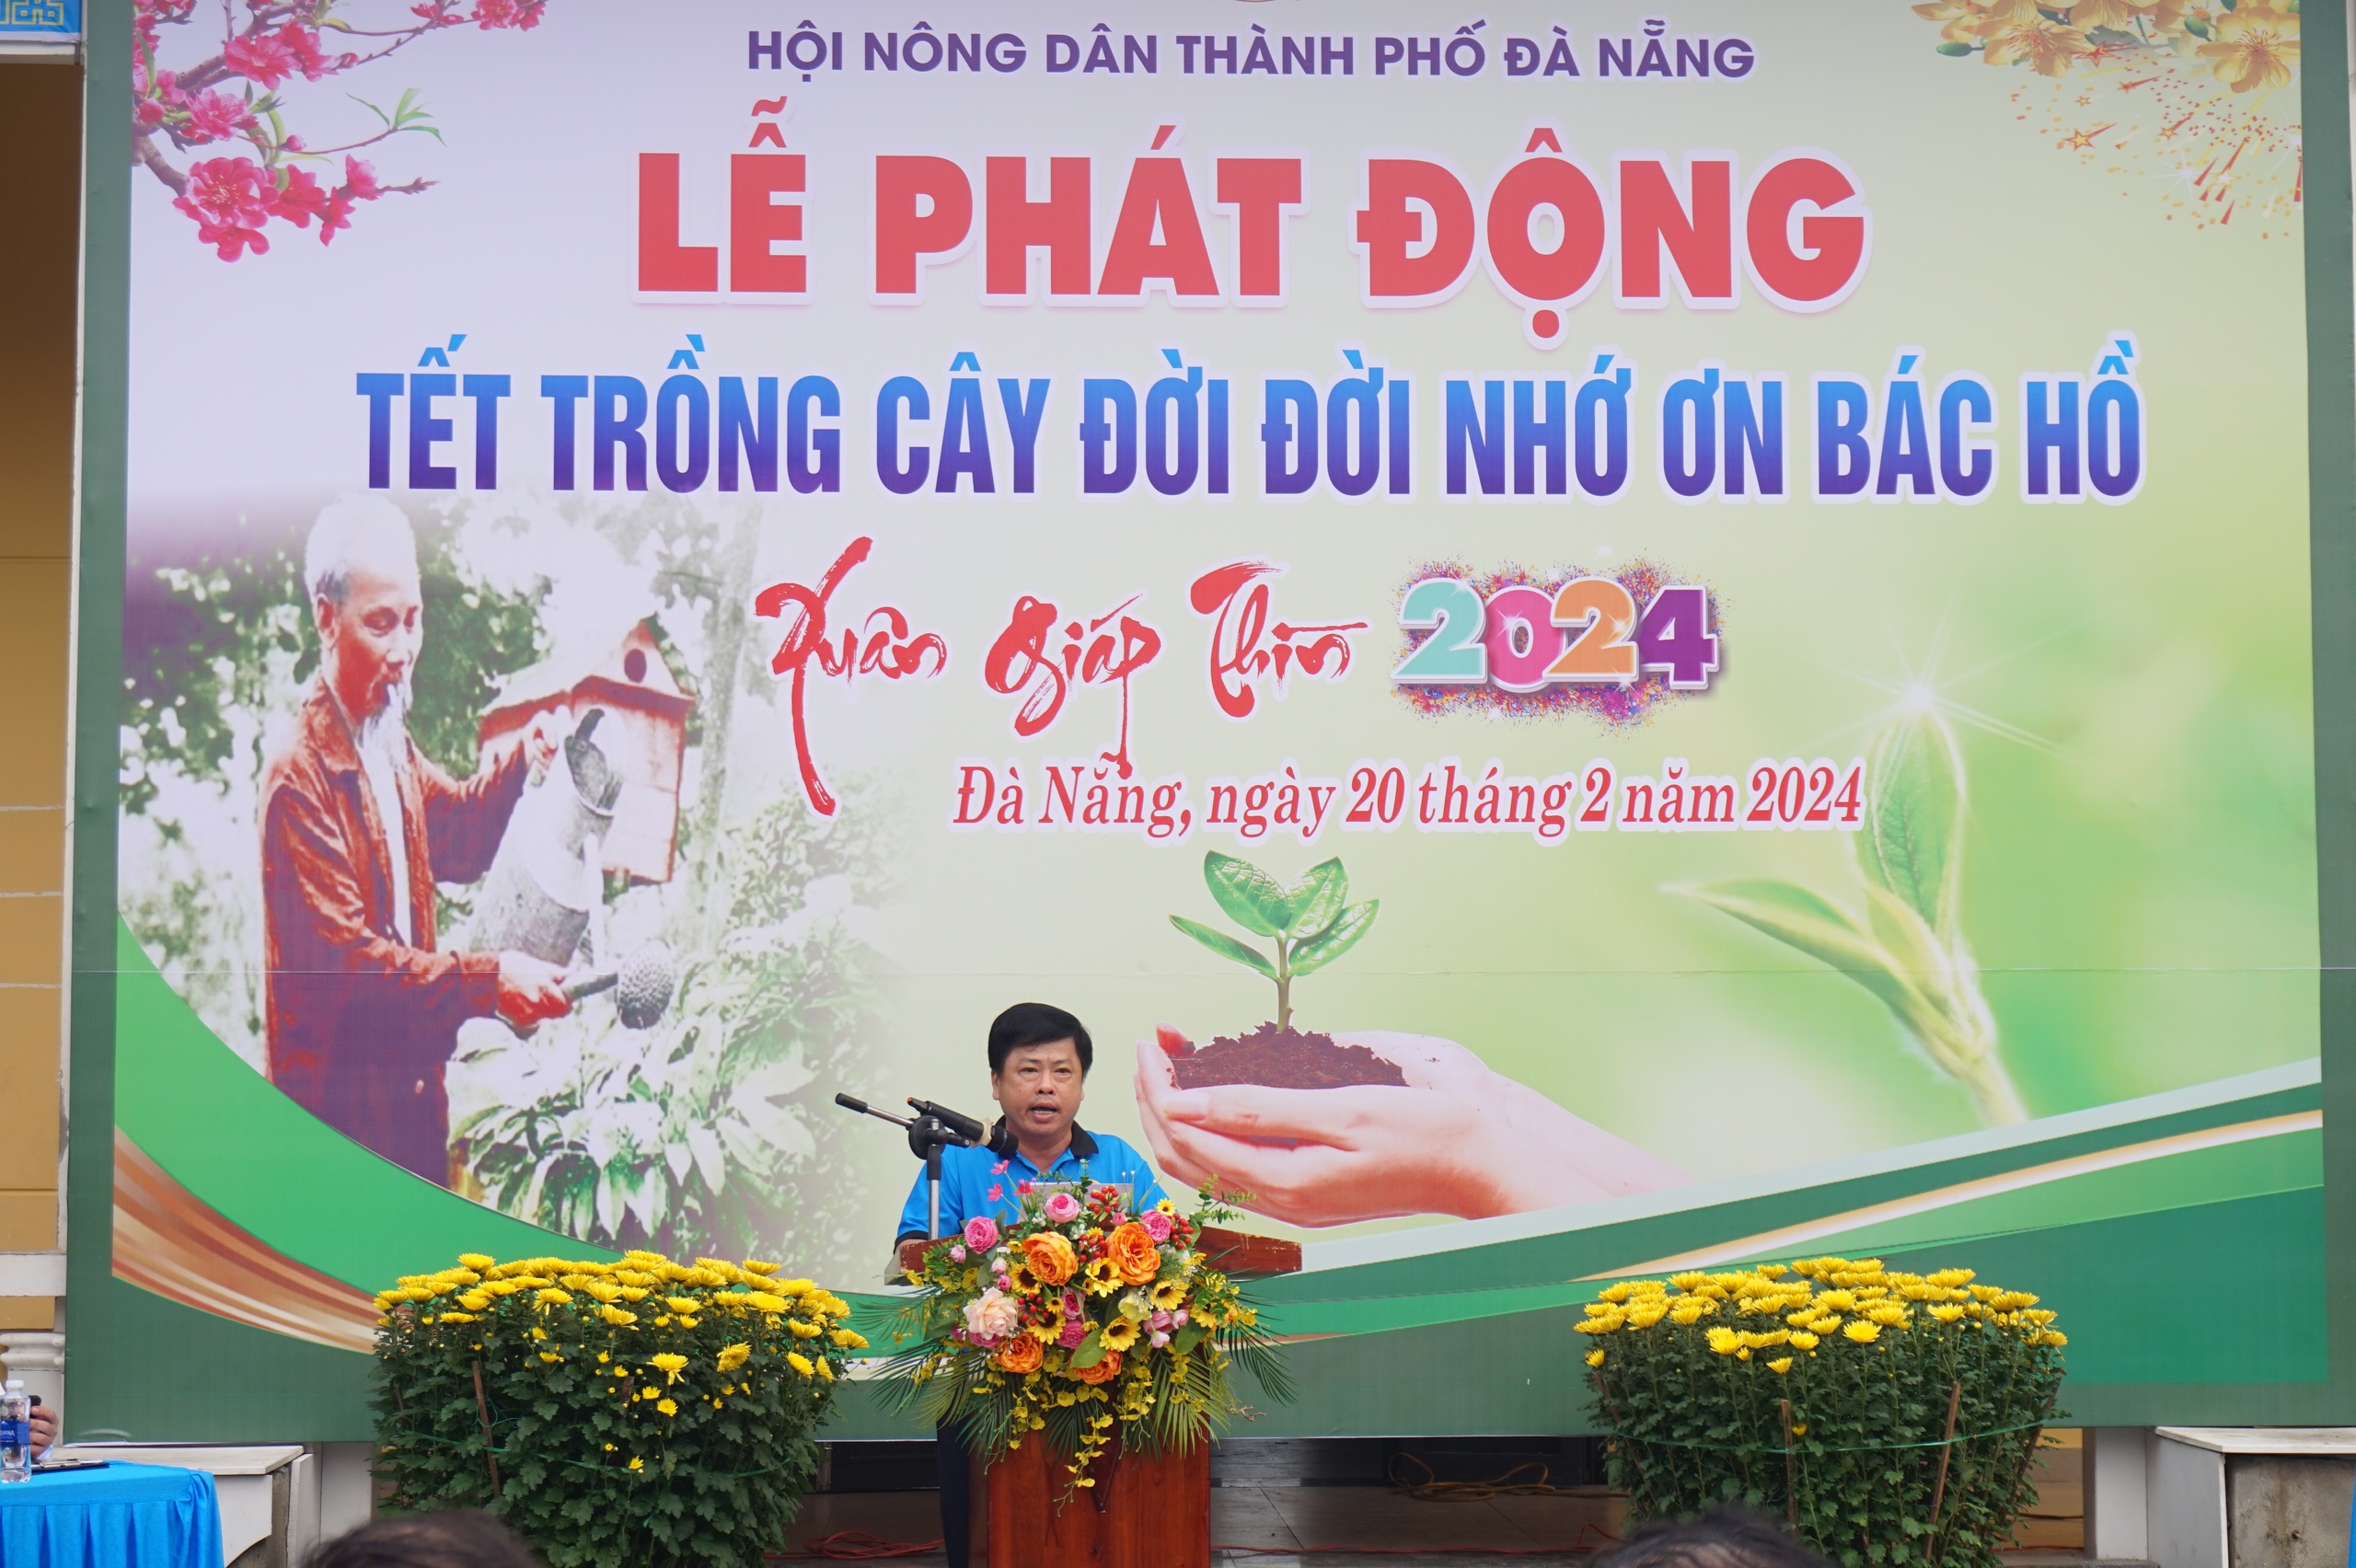 Hội Nông dân thành phố Đà Nẵng phát động “Tết trồng cây đời đời nhớ ơn Bác Hồ” Xuân Giáp Thìn 2024- Ảnh 5.